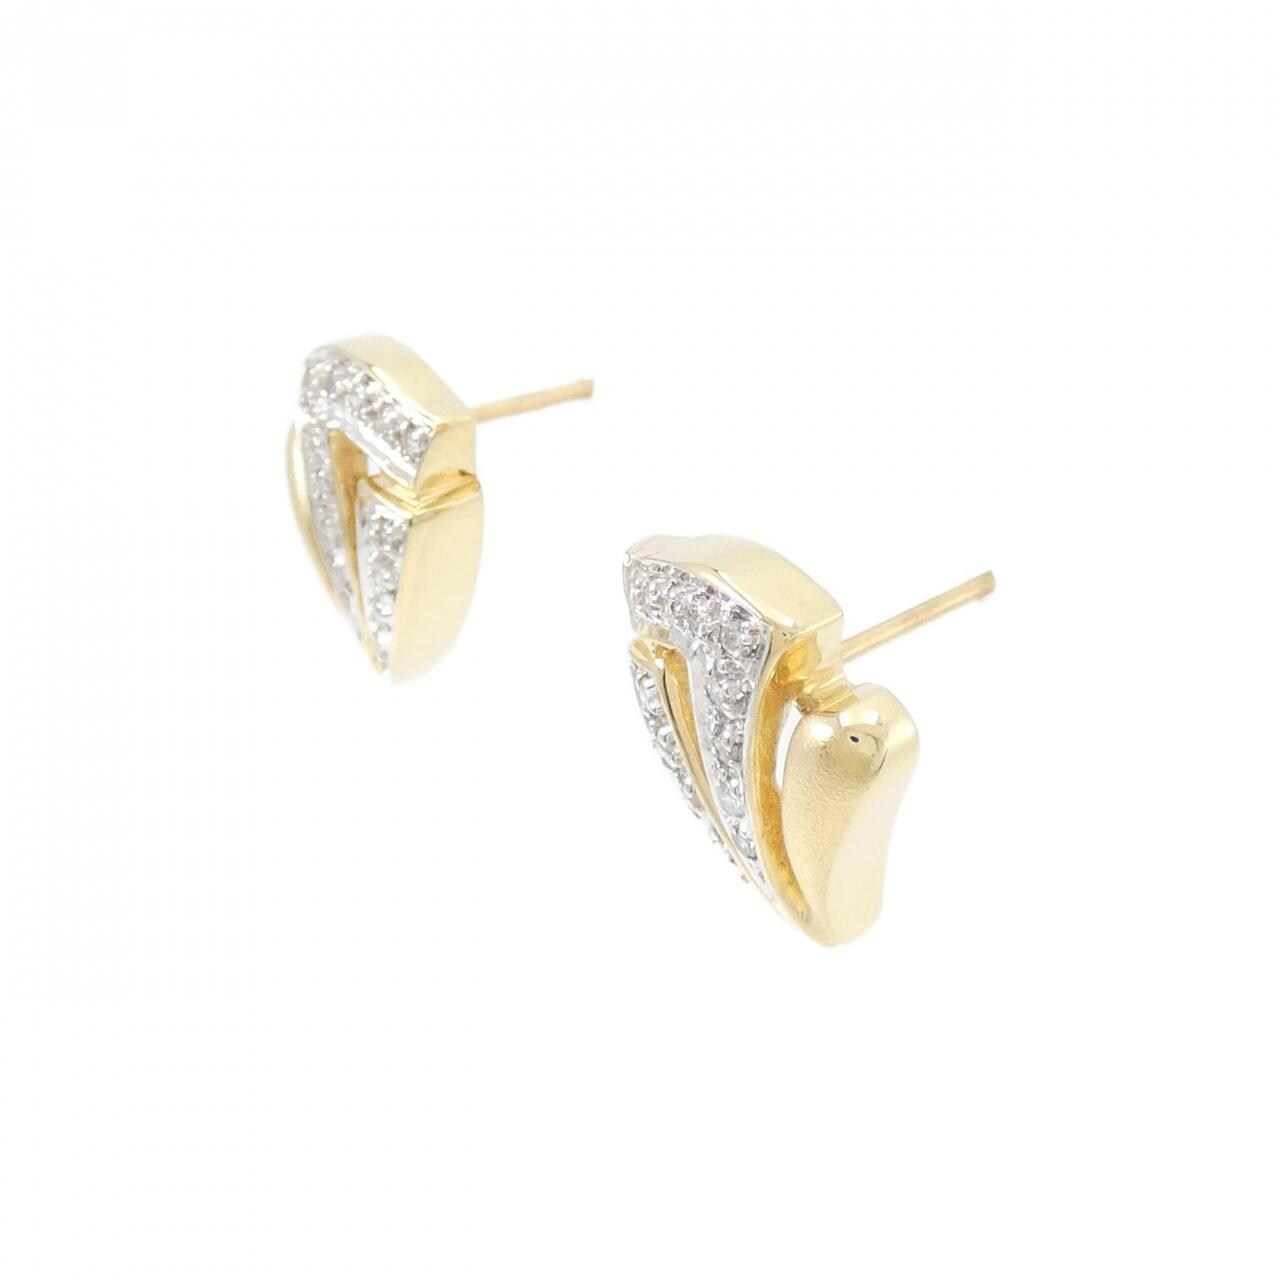 K18YG/K18WG Diamond earrings 0.20CT